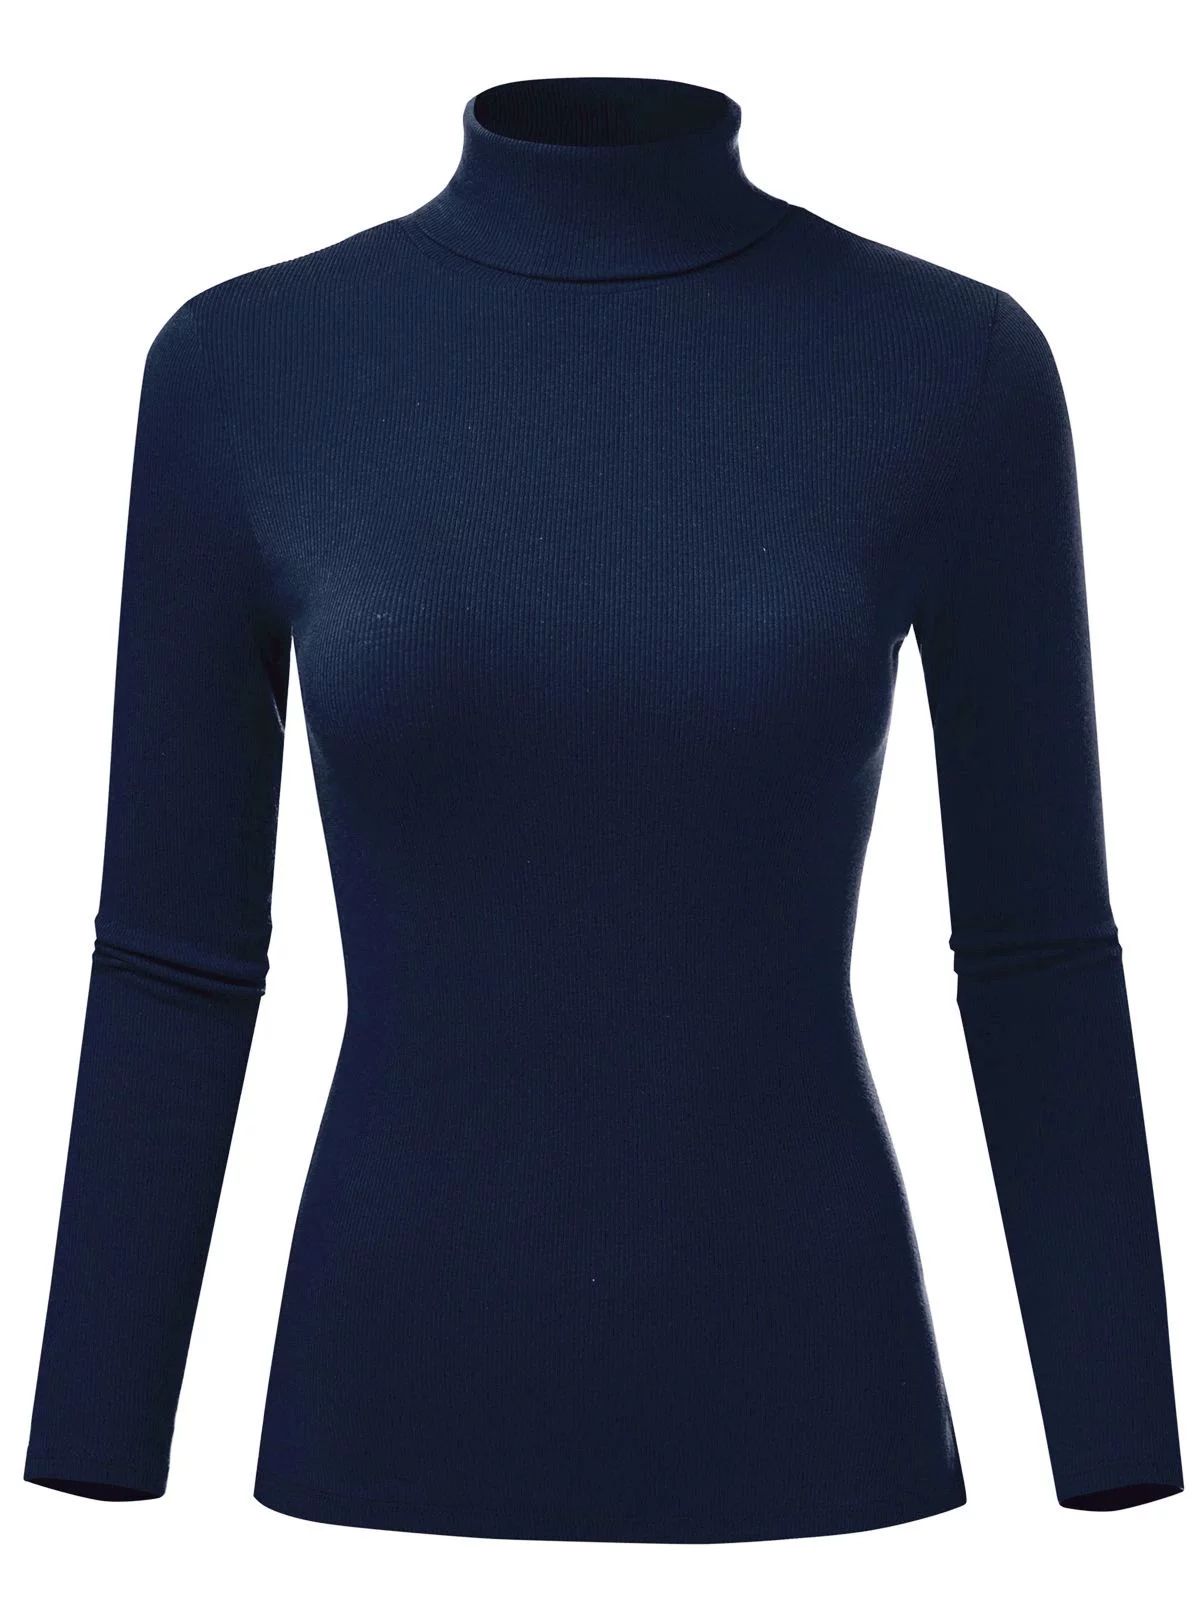 FashionMille Women's Ribbed Slim Fit Lightweight Long Sleeve Turtleneck Sweater | Walmart (US)